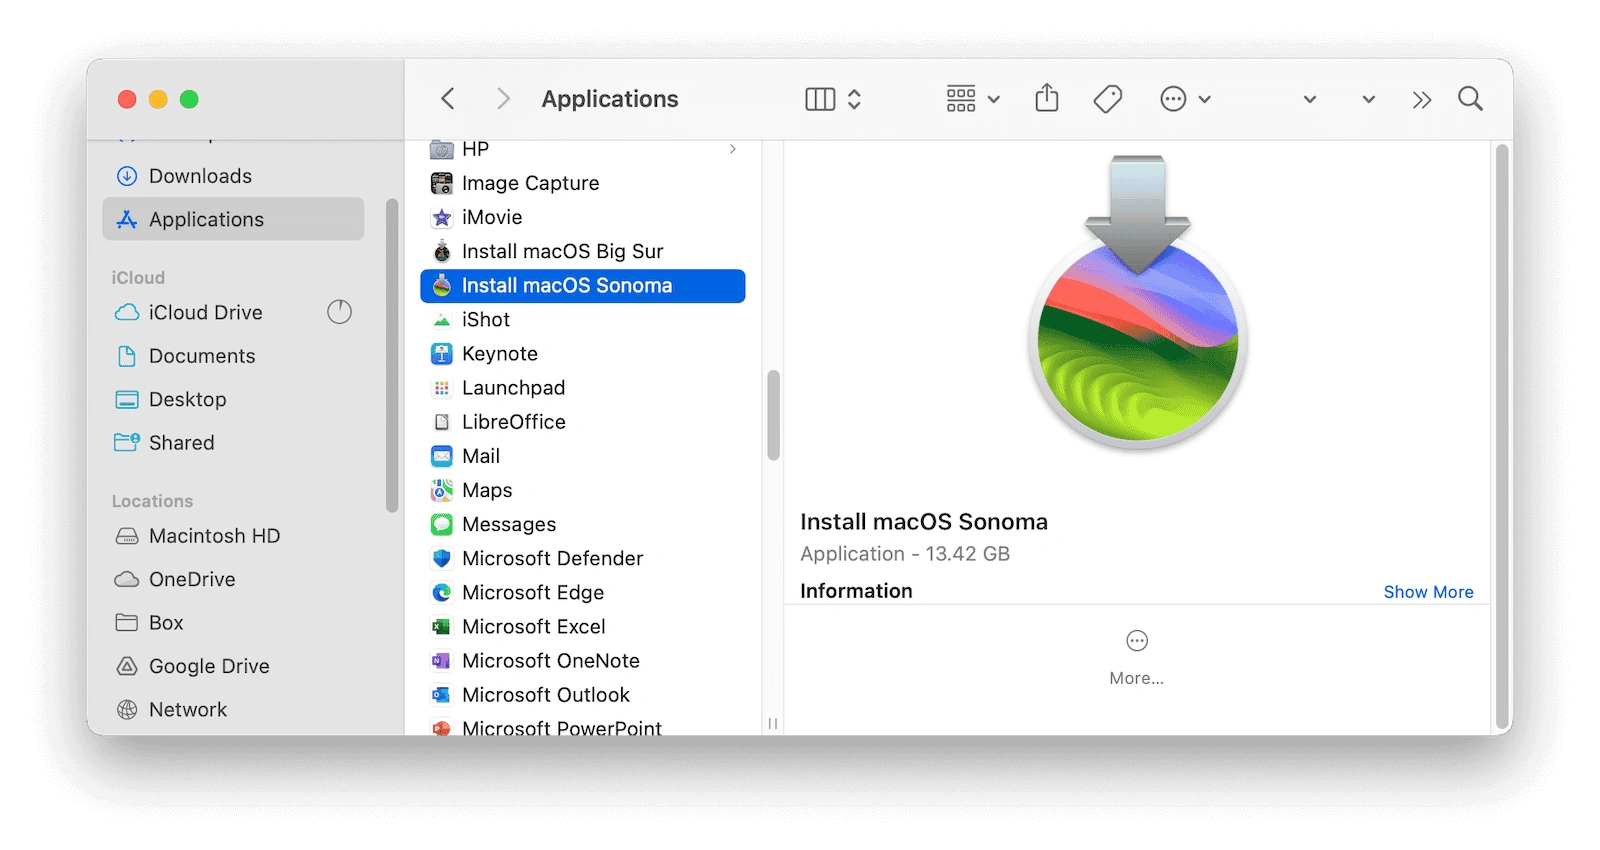 Find macOS Sonoma Full Installer in Applications